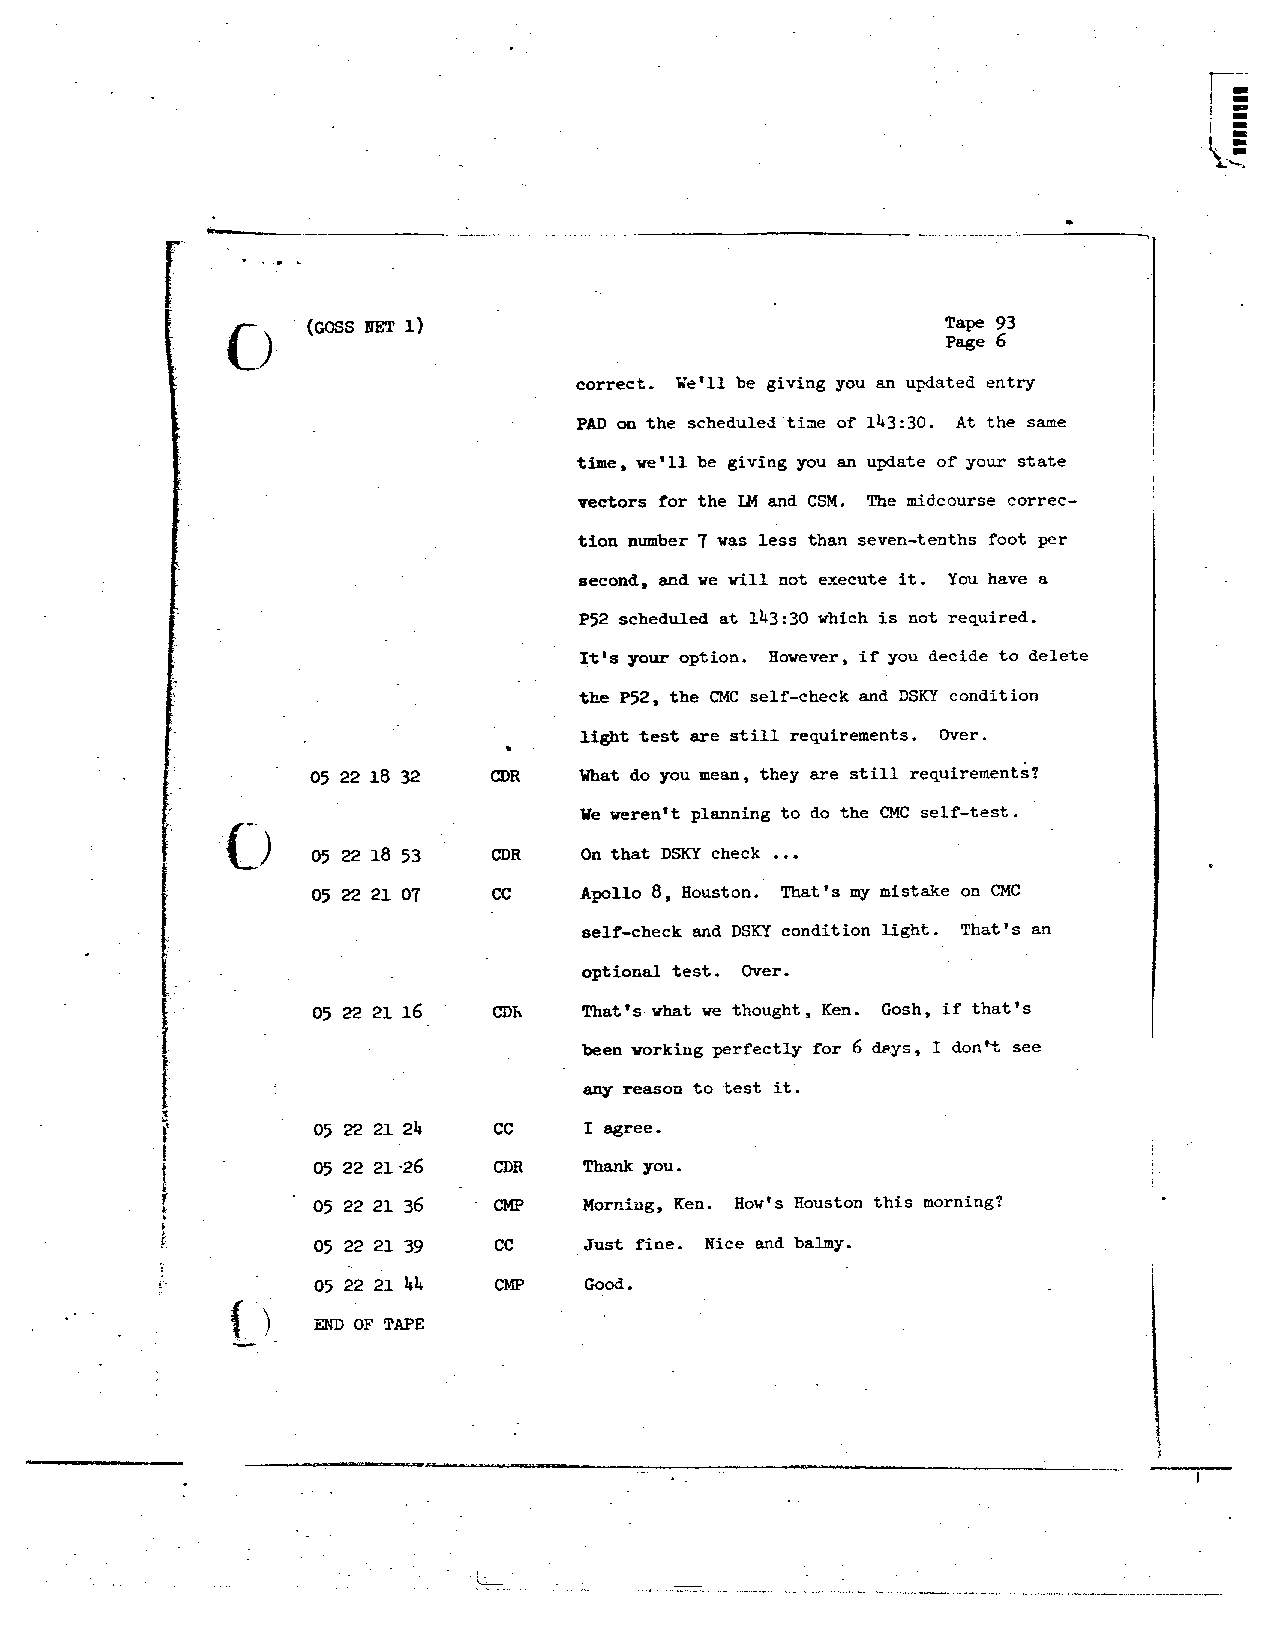 Page 738 of Apollo 8’s original transcript